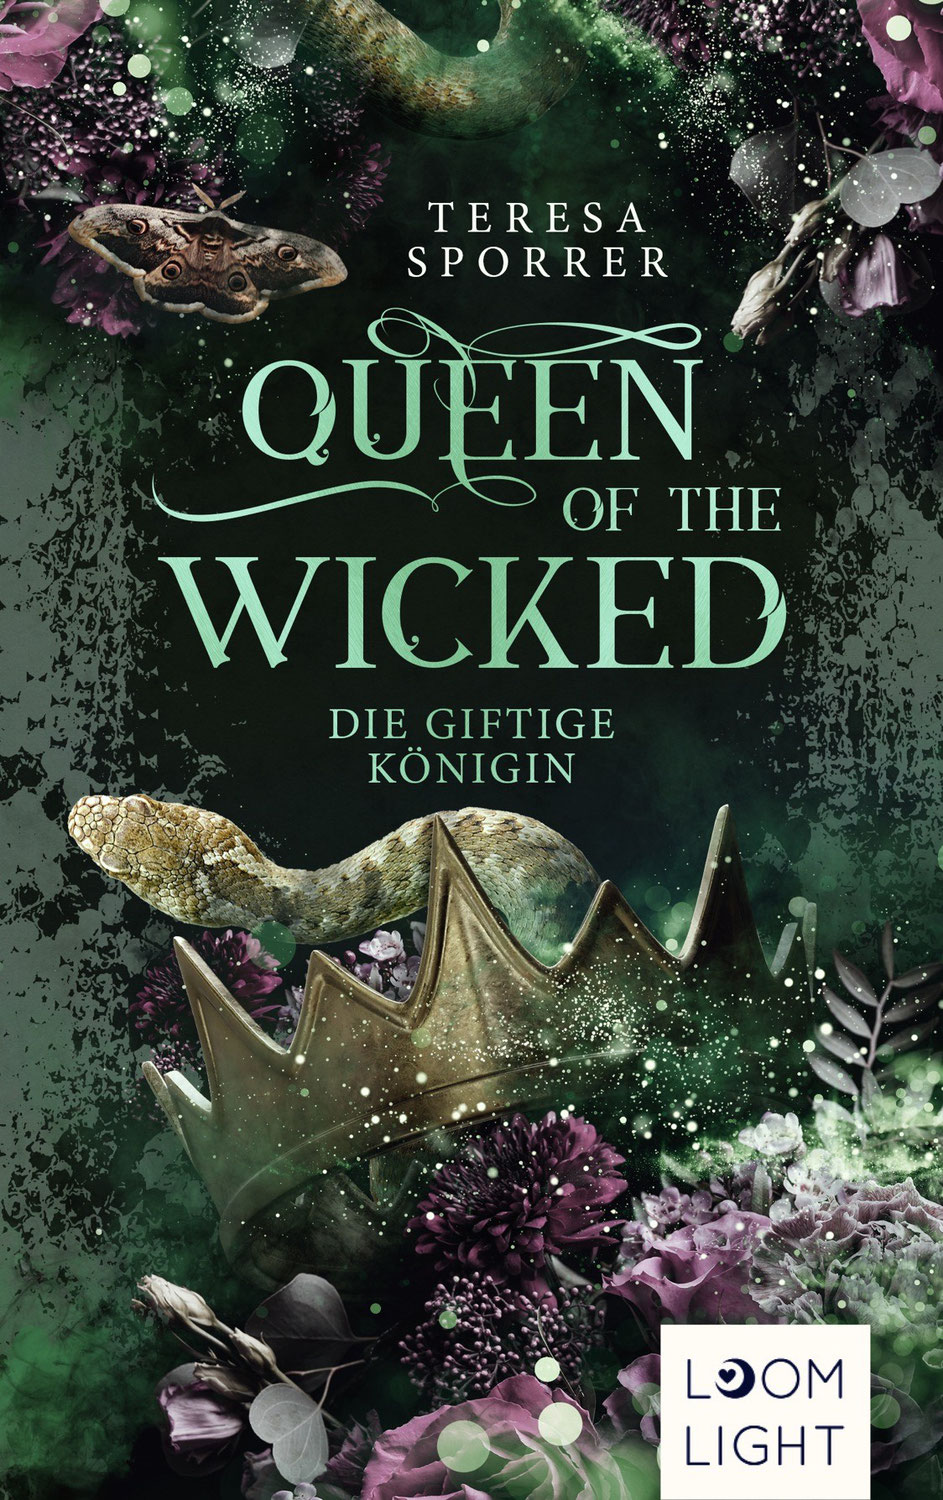 Rezension zu "Queen of the Wicked : Die giftige Königin" von Teresa Sporrer